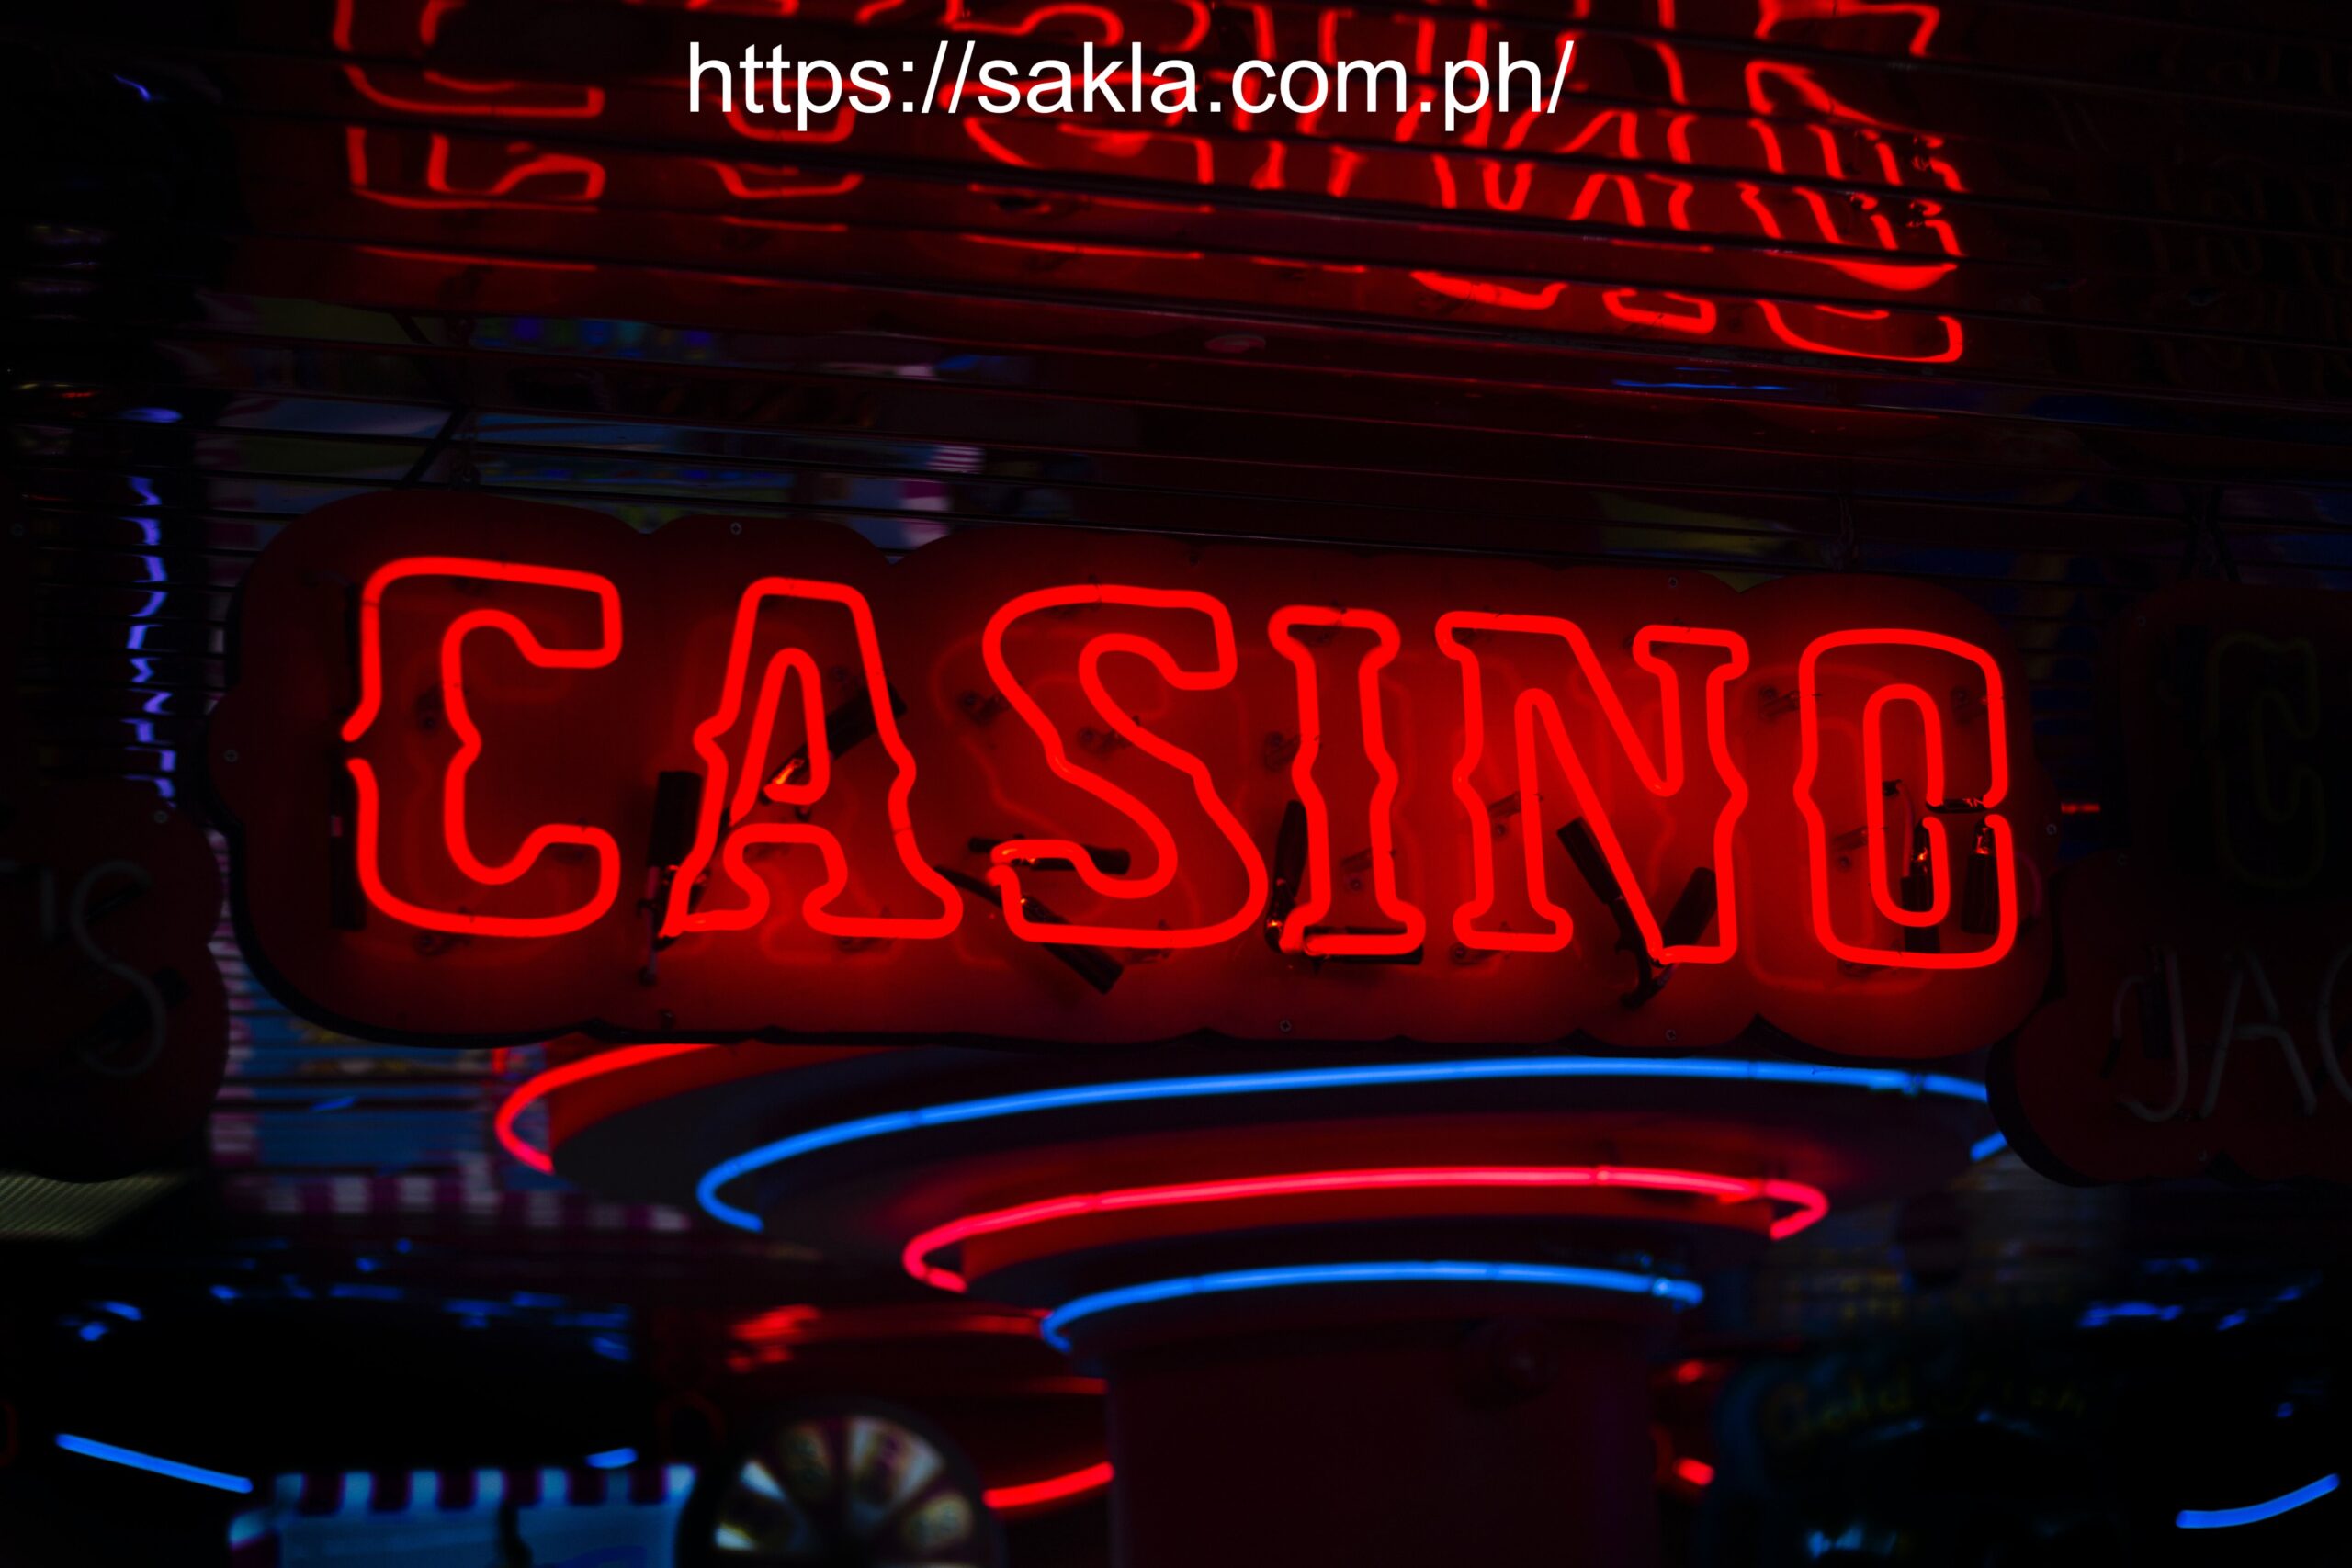 origination of casino